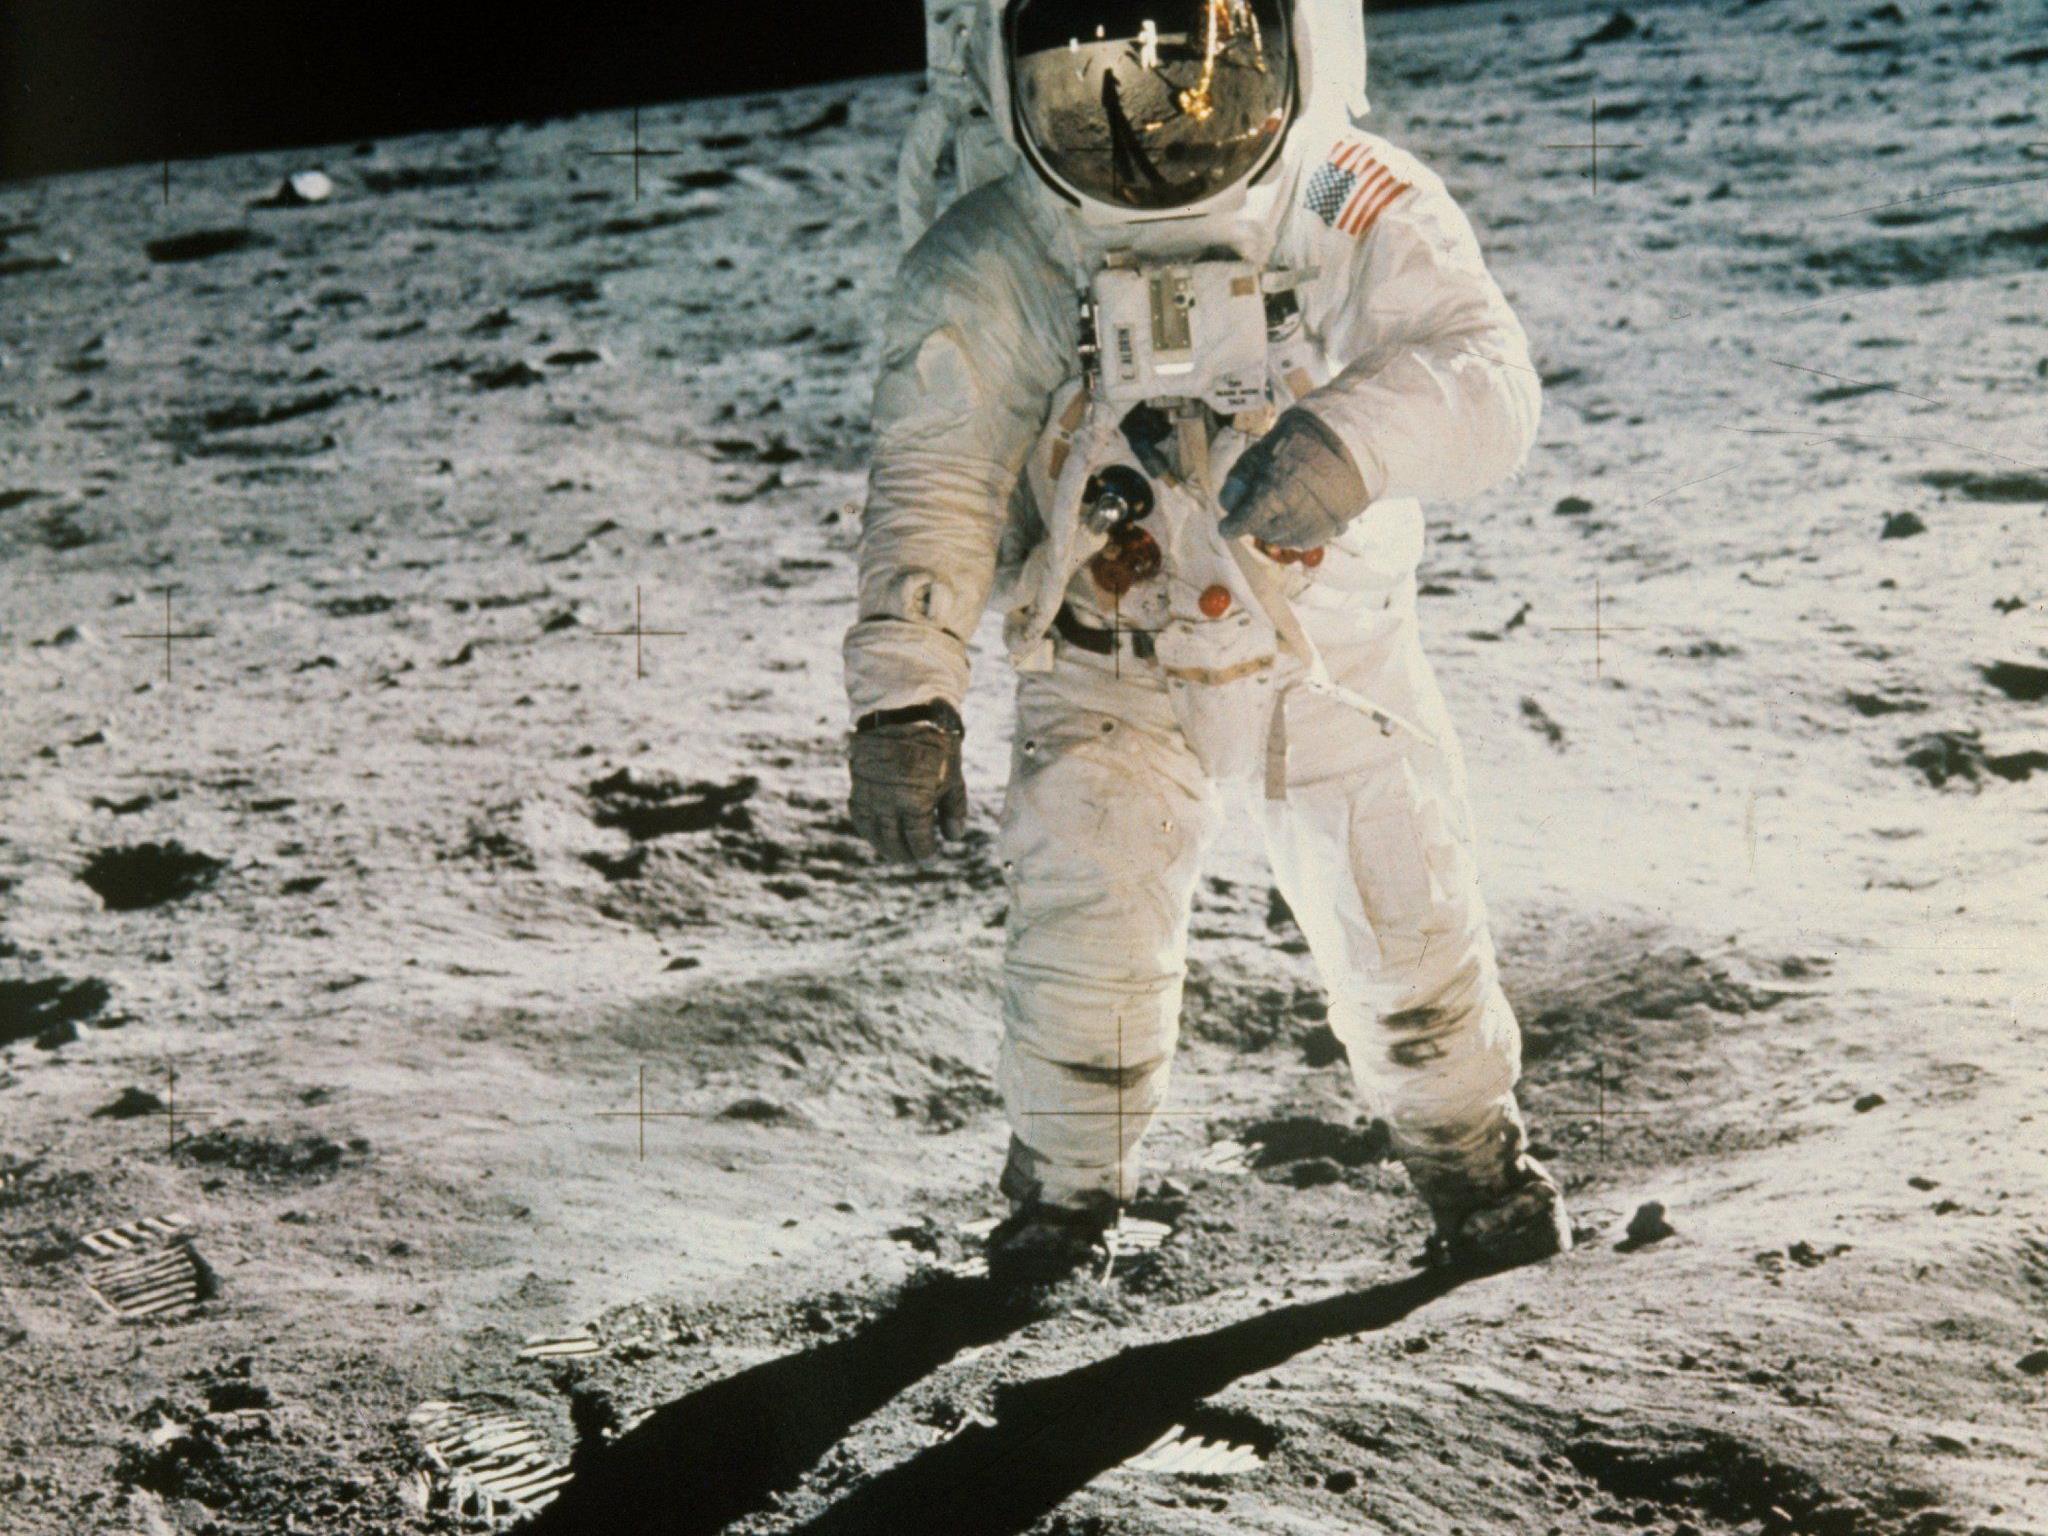 Edwin "Buzz" Aldrin bei seinen ersten Schritten auf dem Mond. Im Visier erkennbar: Neil Armstrong.